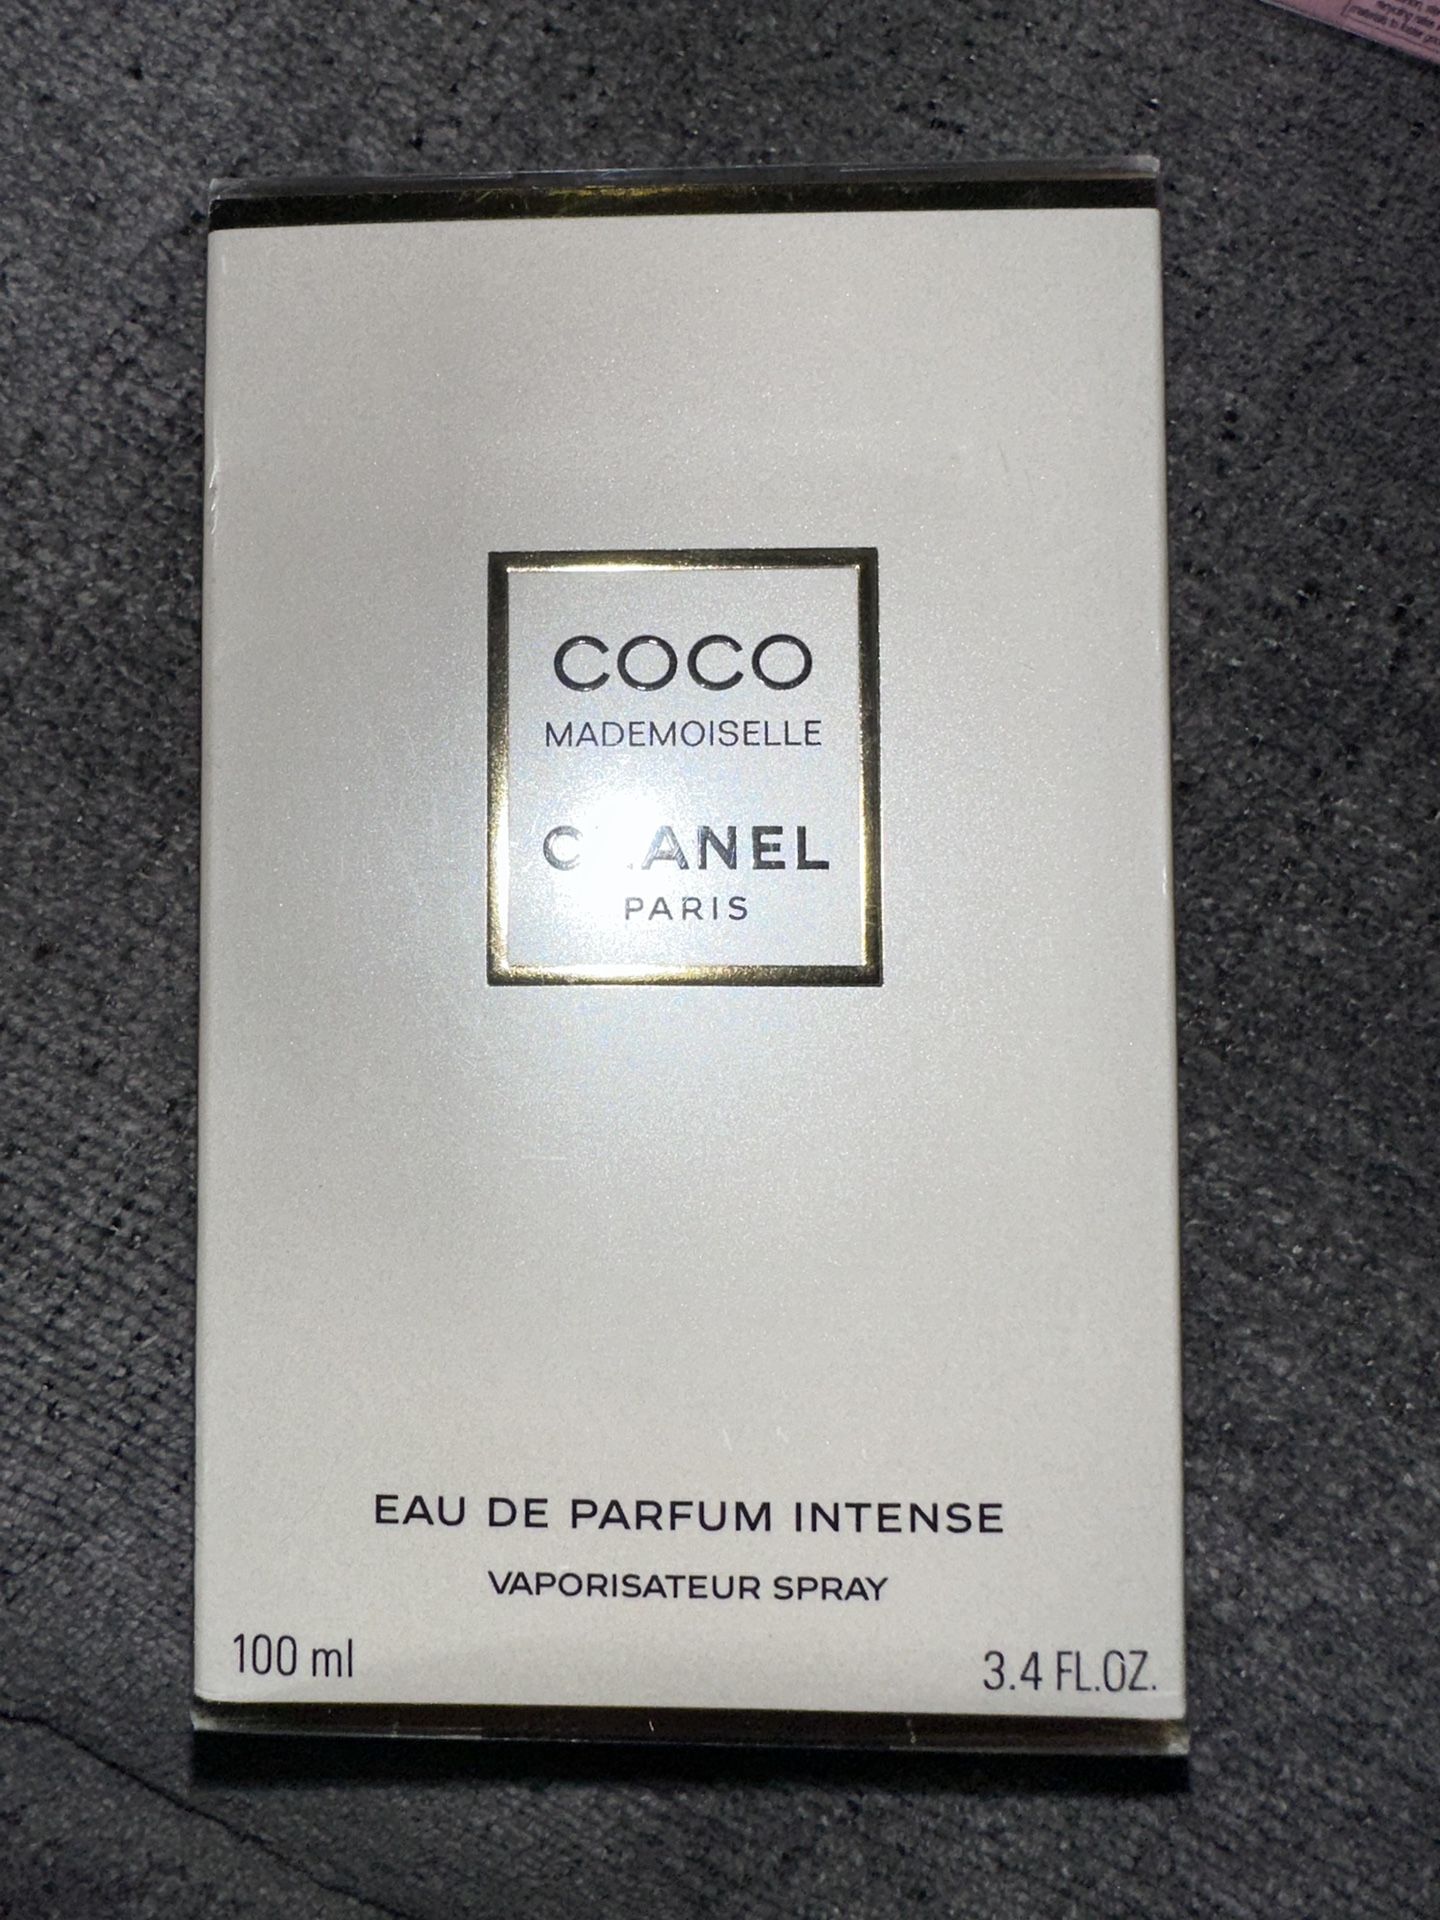 Coco Mademoiselle by CHANEL Eau De Parfum 3.4 FL Oz. 100ml for sale online